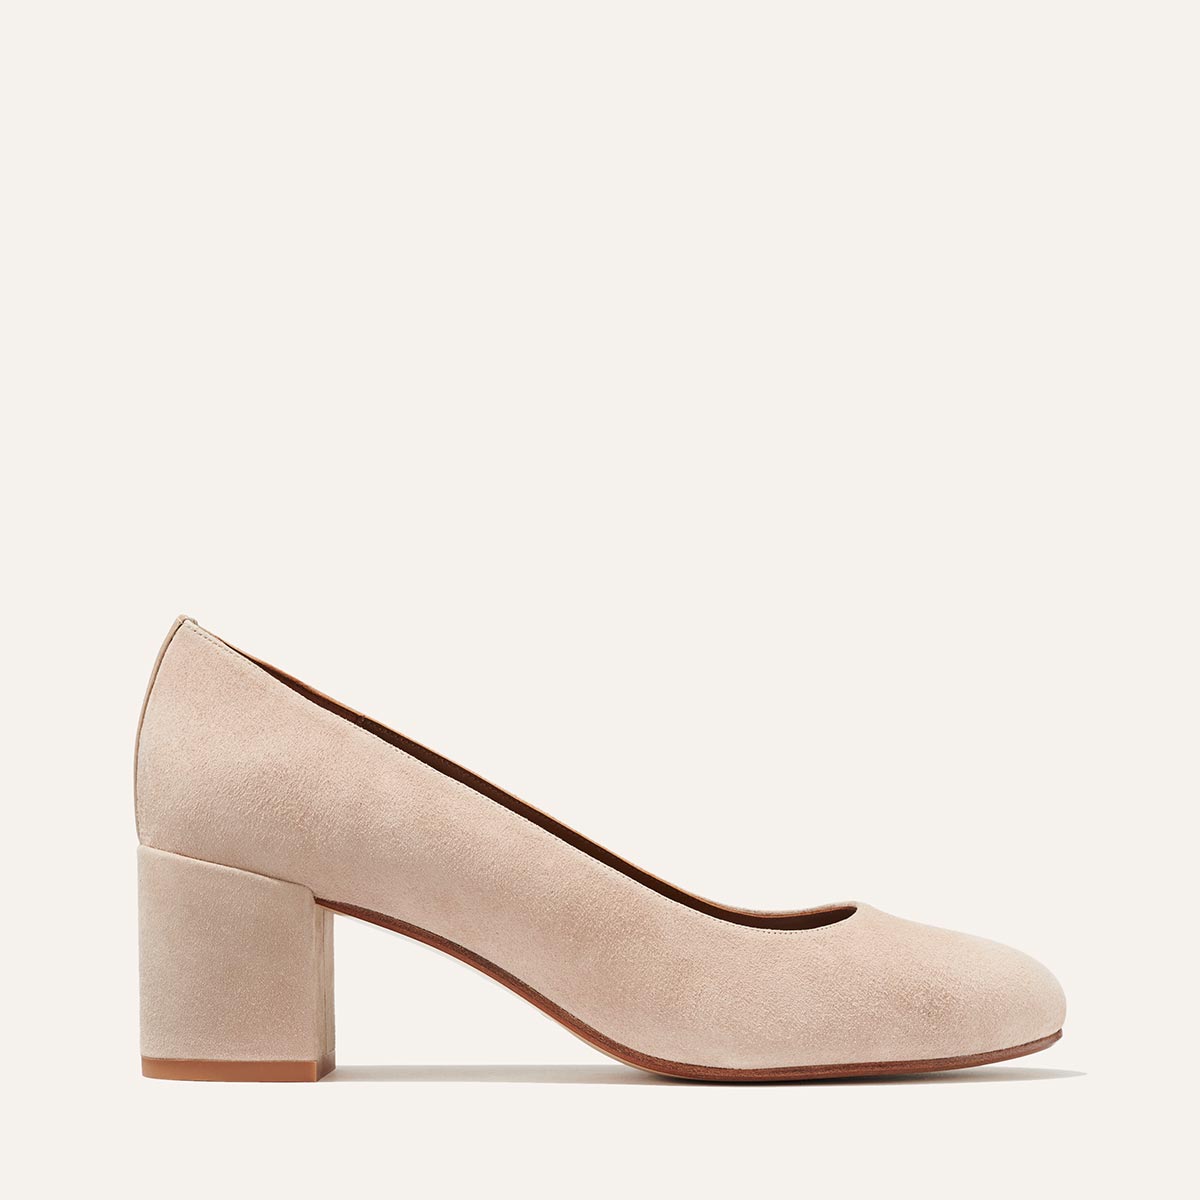 Buy Rocia Beige block heel pump for Women Online at Regal Shoes |1277365